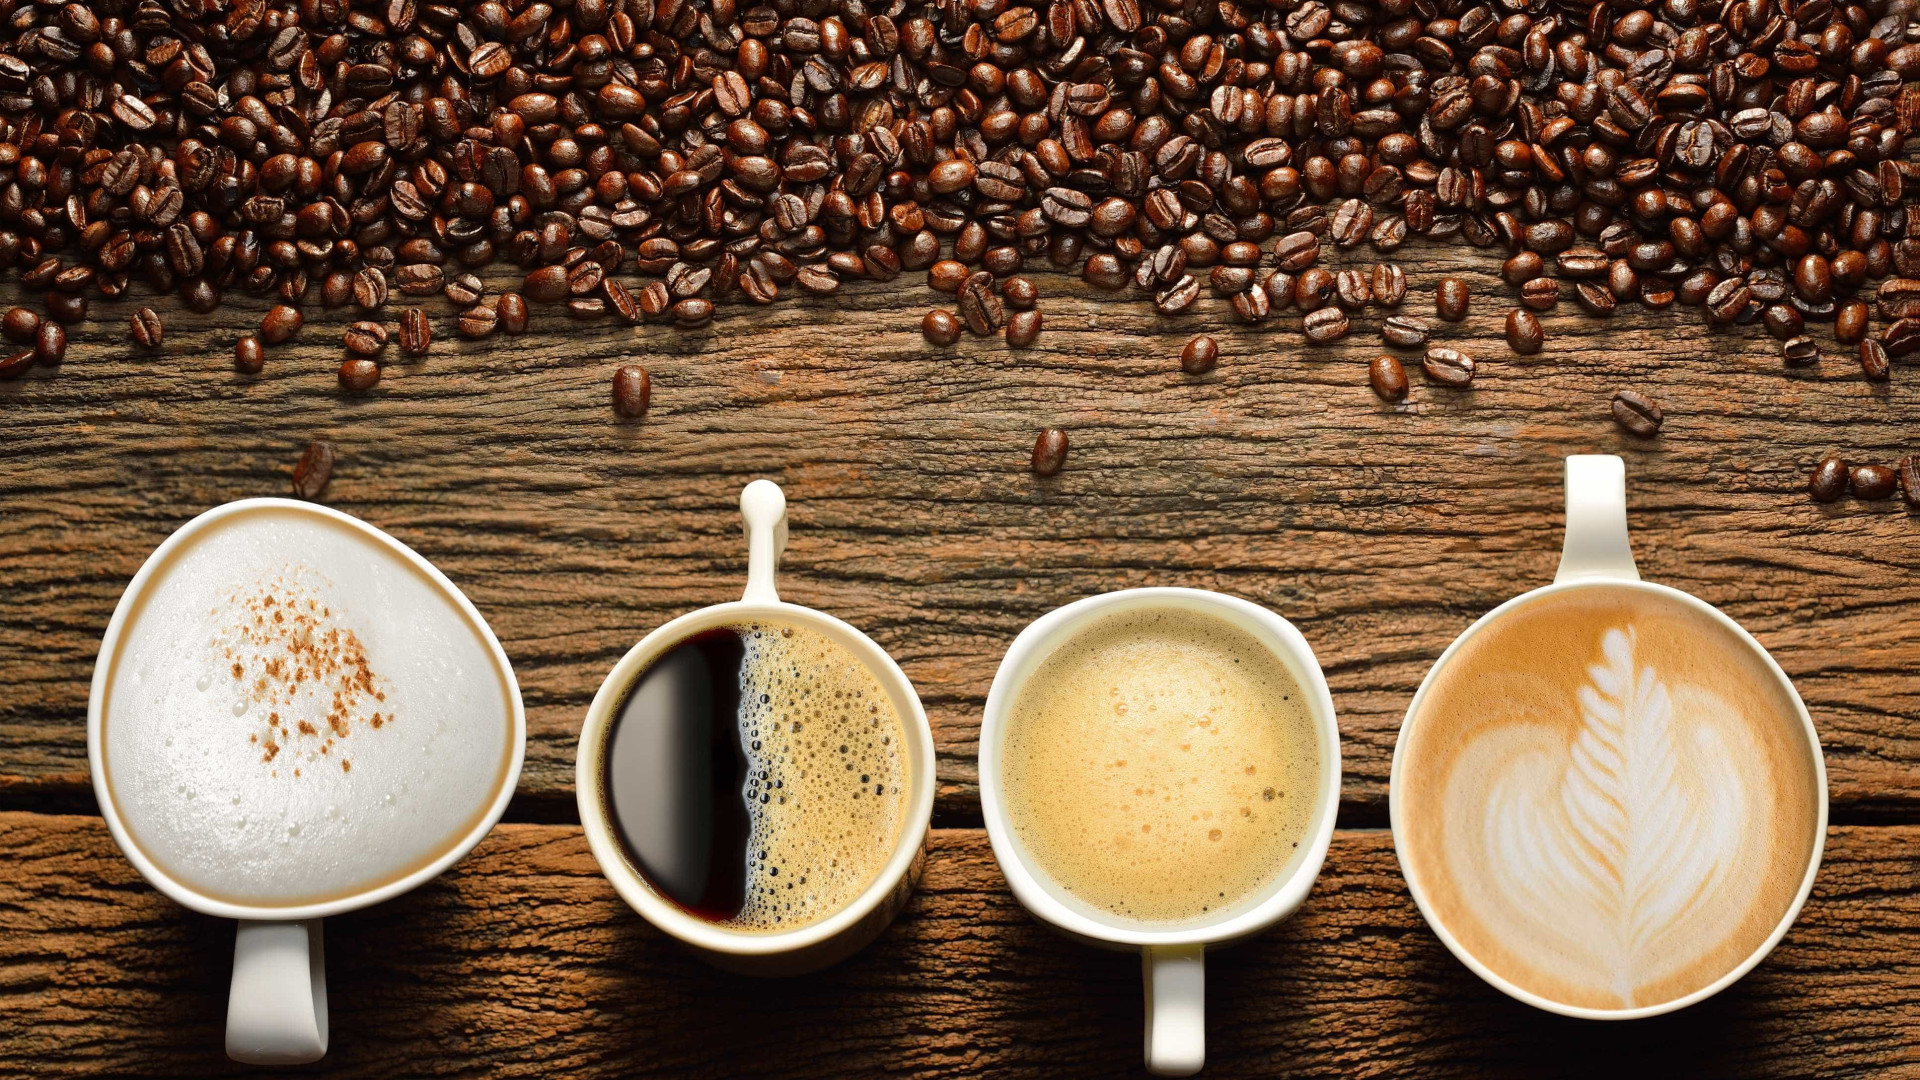 Beber café ou chá muito quente aumenta risco de ter câncer